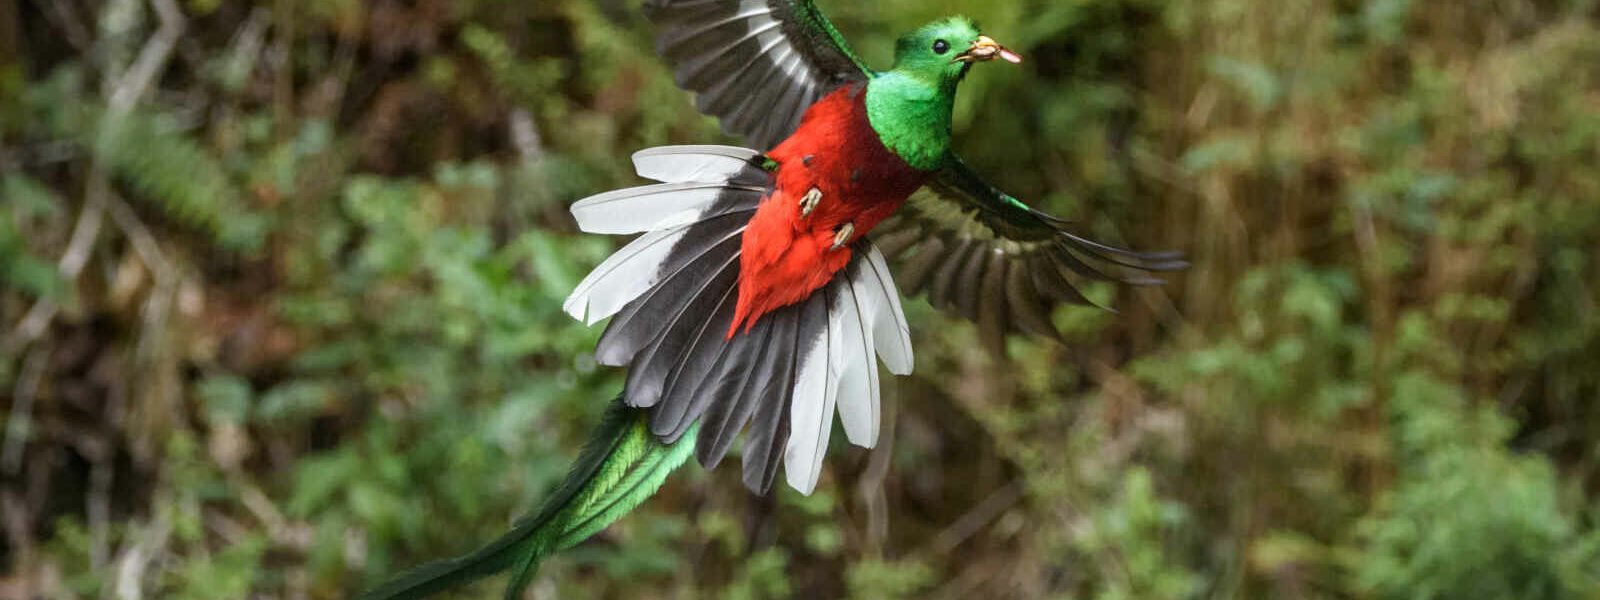 Quetzal, Guatemala